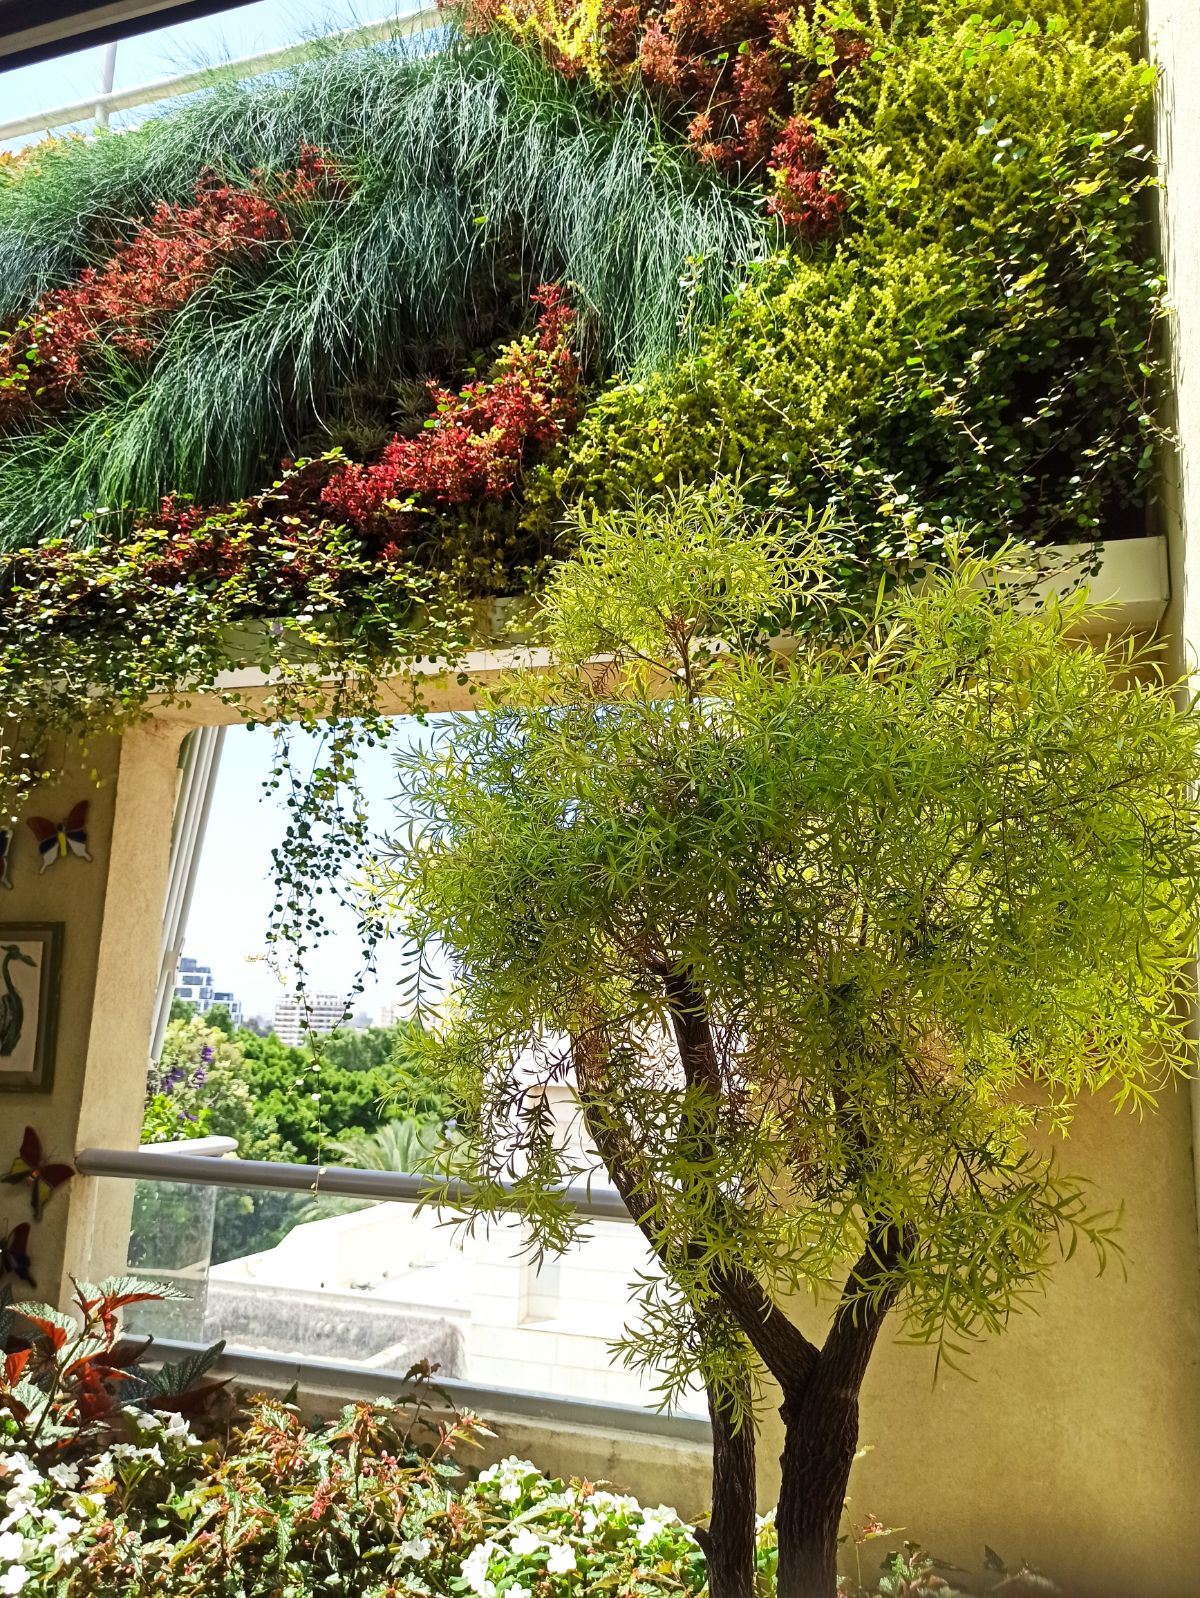 קיר ירוק במרפסת בשילוב אדניות עם עץ